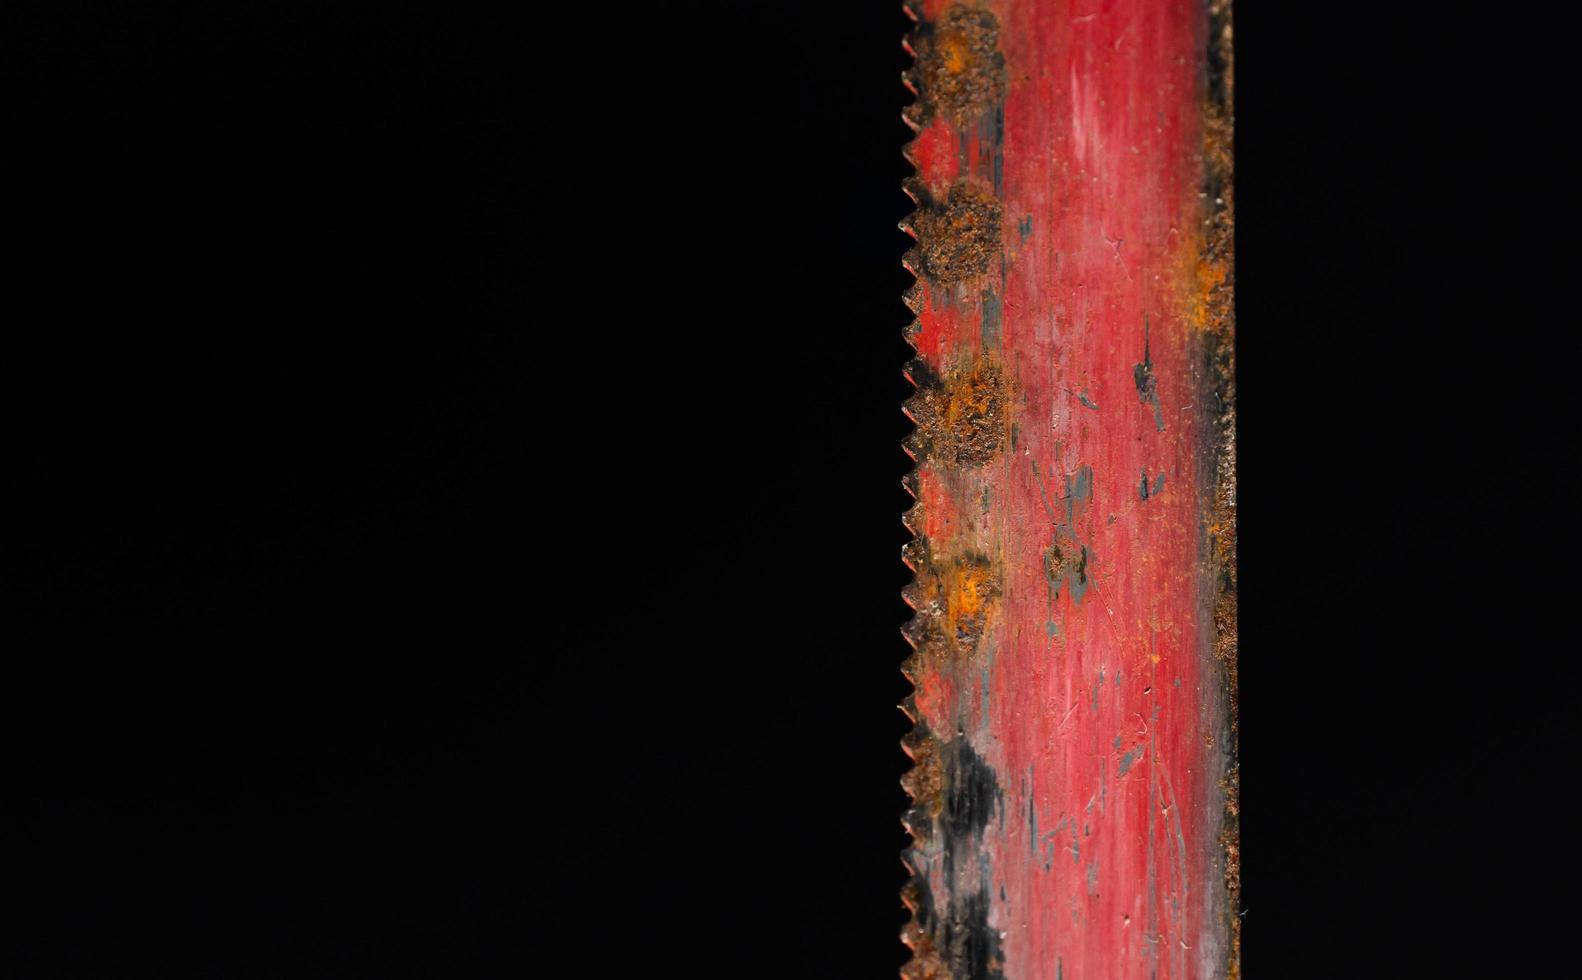 zaagblad oud rood versleten met roest op het oppervlak en krassen. macro foto op zwarte achtergrond.